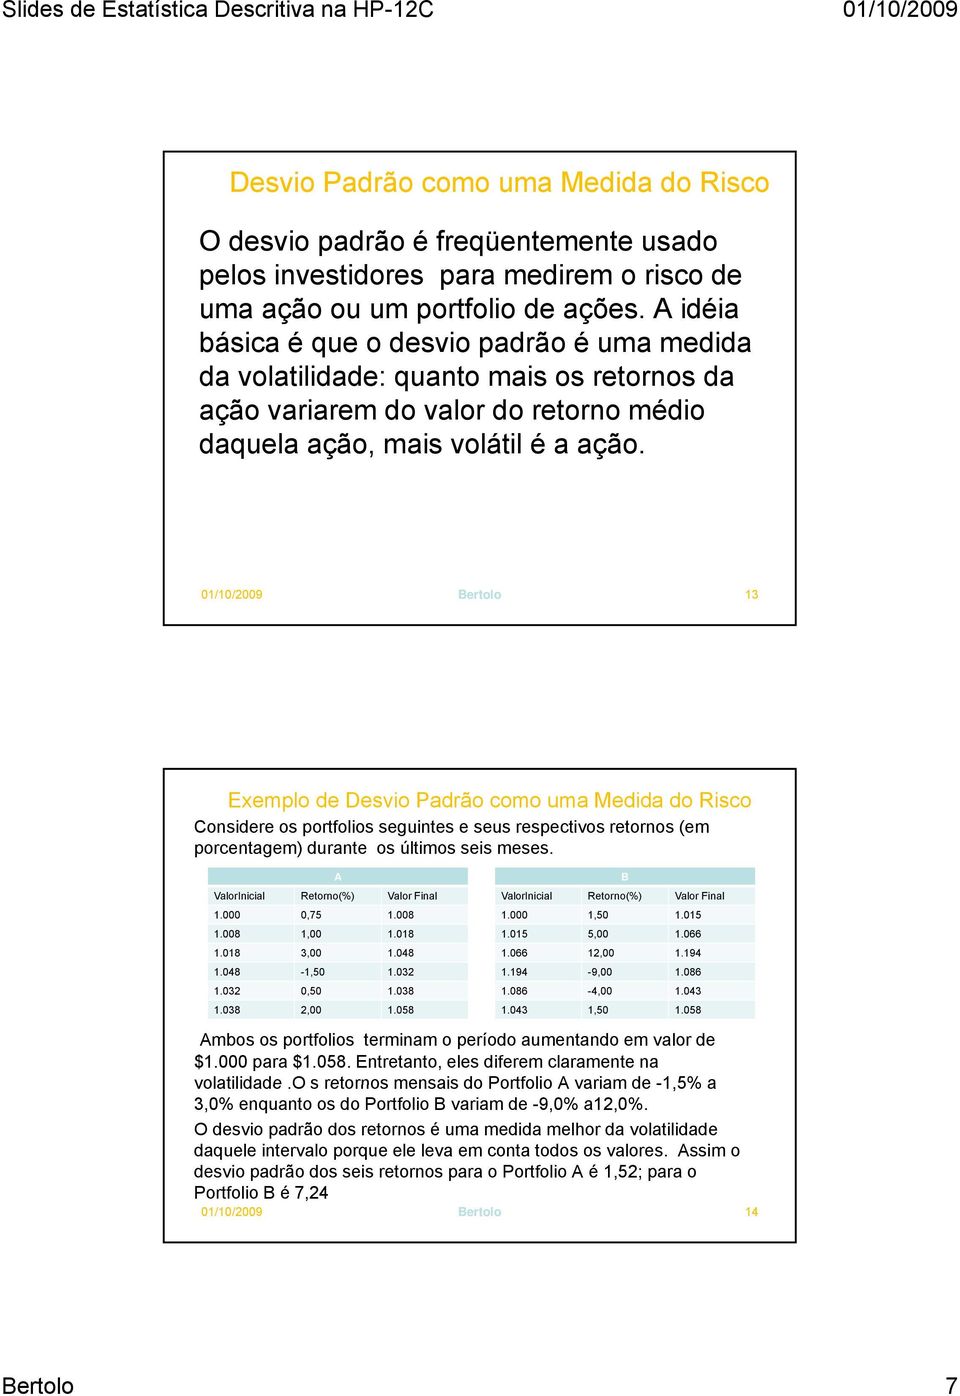 01/10/2009 Bertolo 13 Eemplo de Desvio Padrão como uma Medida do Risco Considere os portfolios seguintes e seus respectivos retornos (em porcentagem) durante os últimos seis meses.